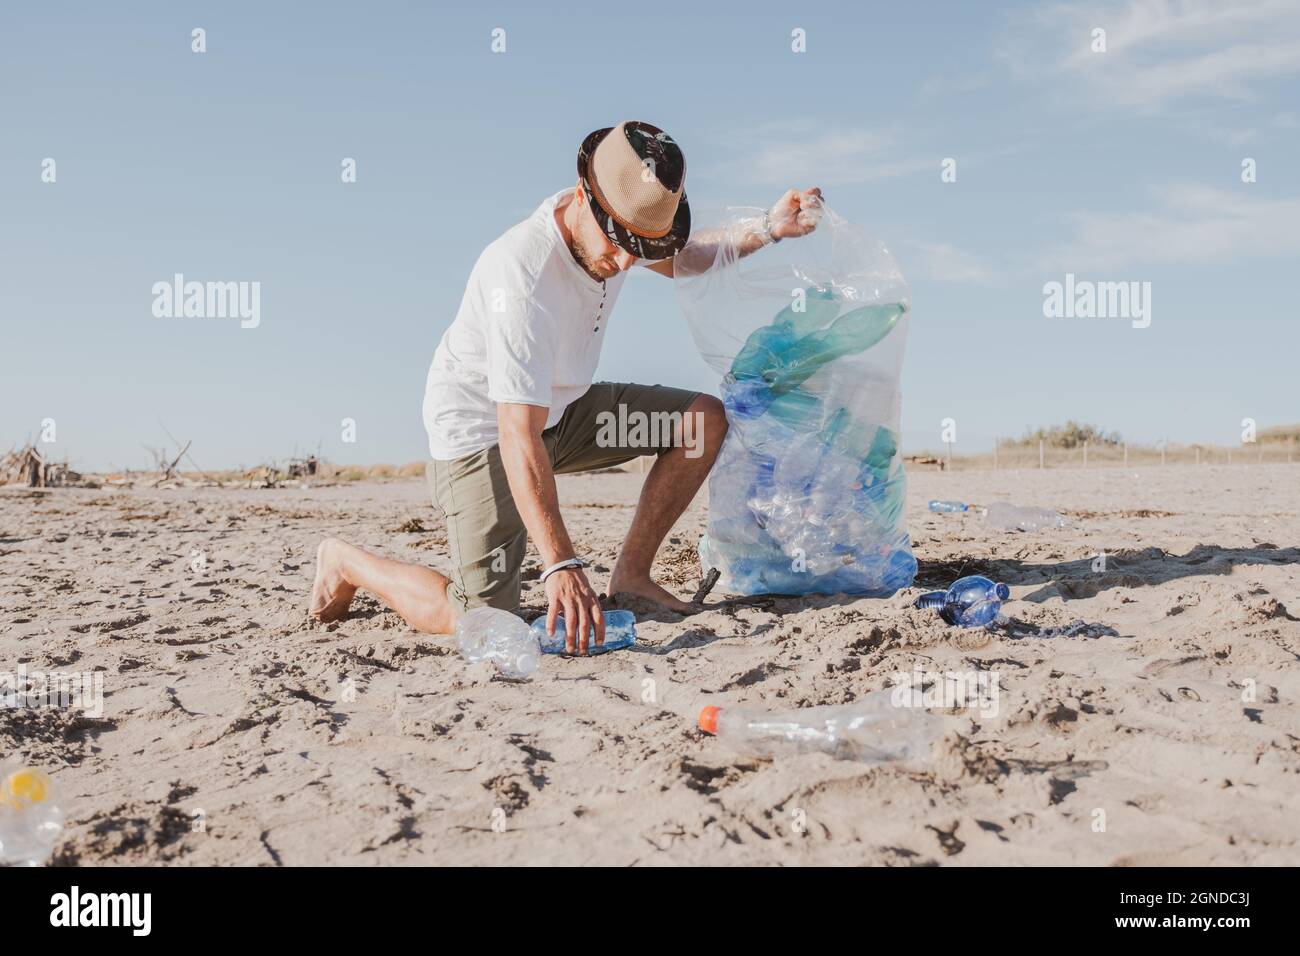 Groupe d'amis activistes collectant des déchets plastiques sur la plage. Les gens nettoyant la plage, avec des sacs. Concept de conservation de l'environnement et de l'océan Banque D'Images